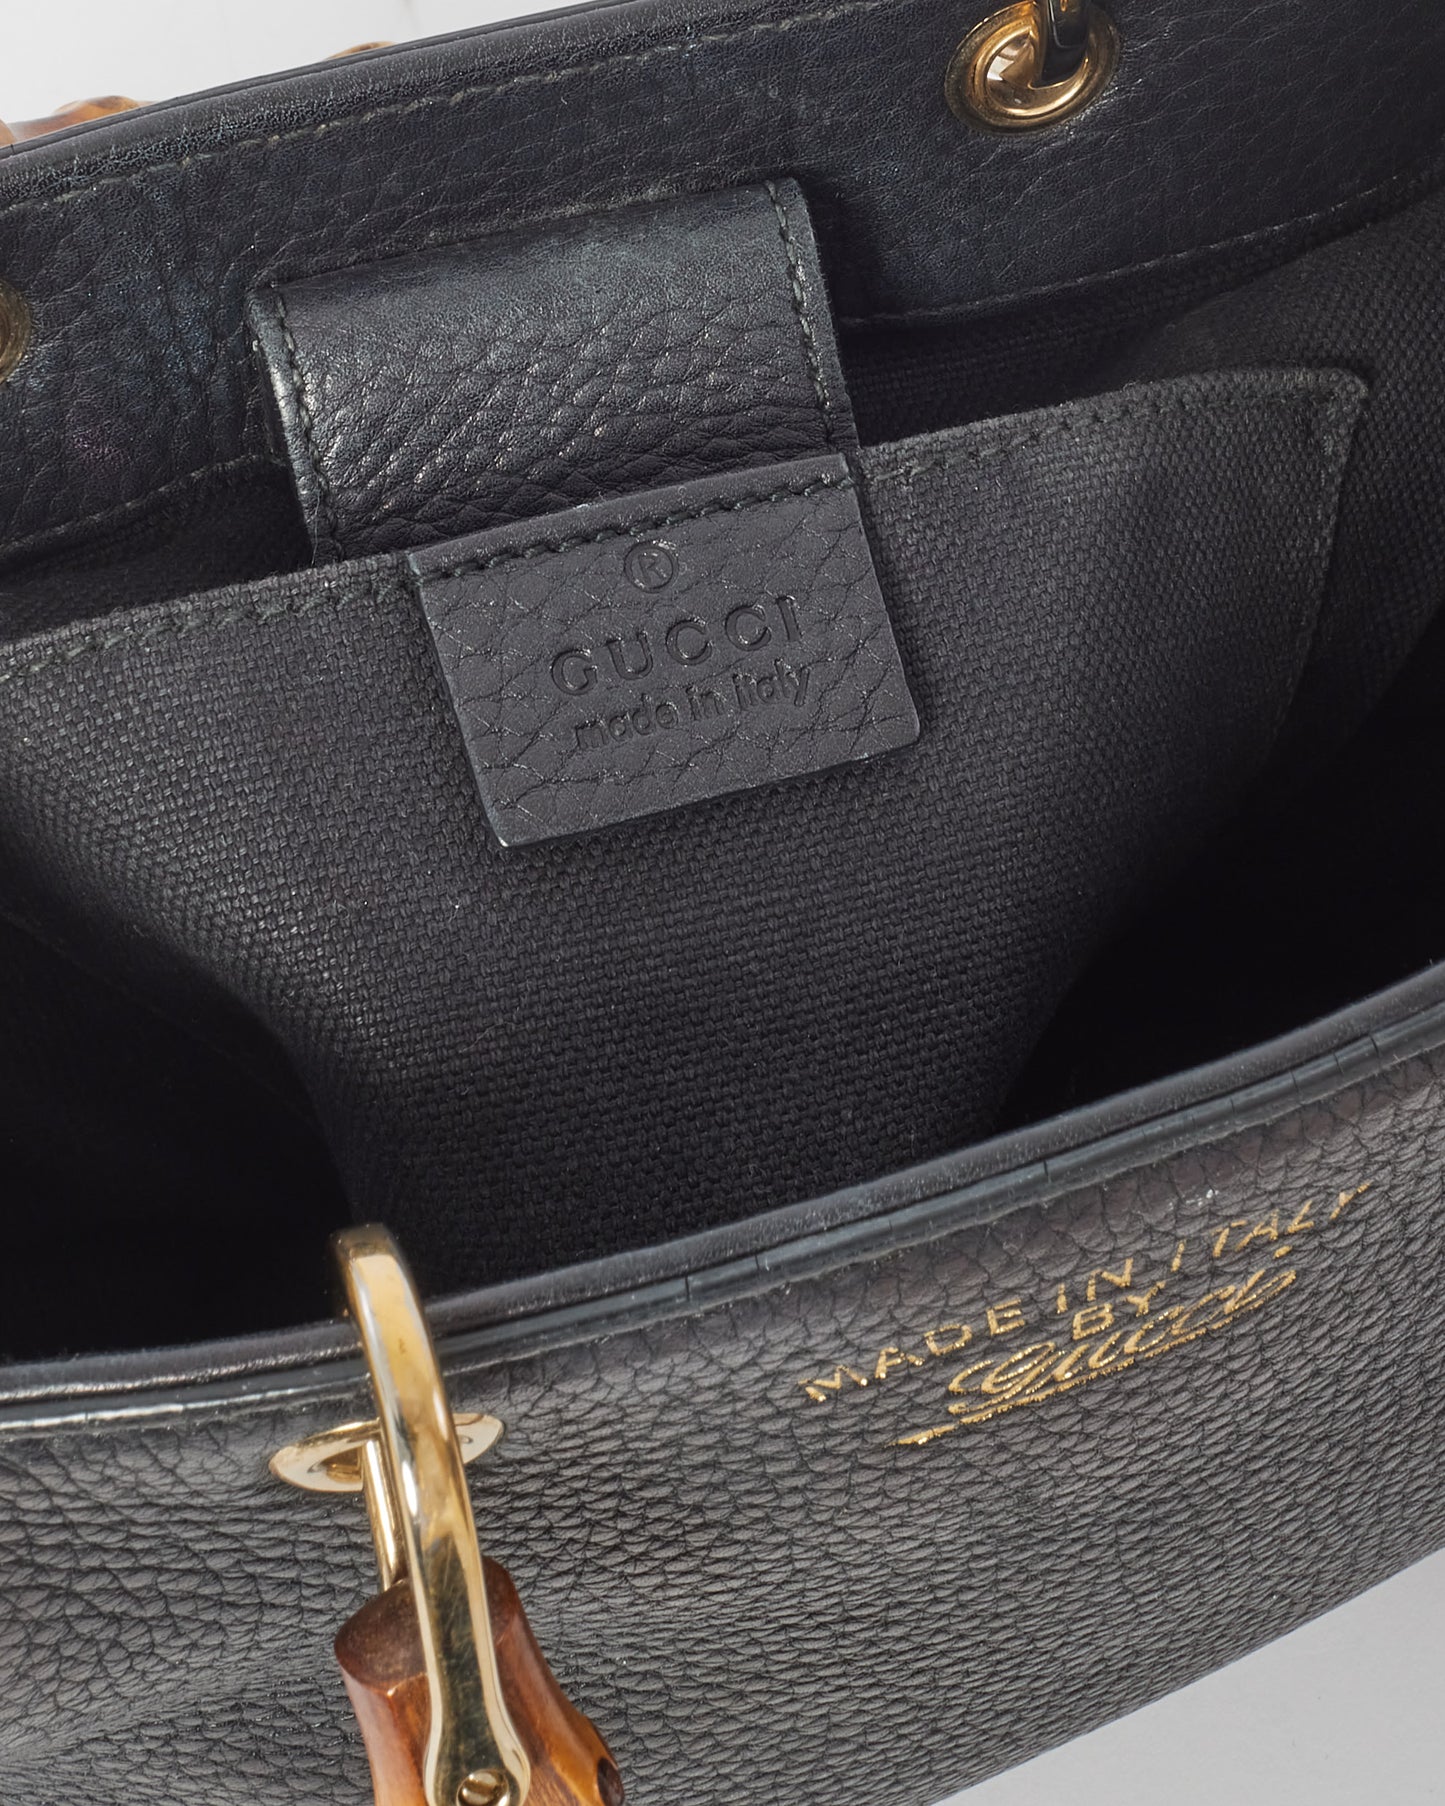 Gucci Mini sac à poignée supérieure en cuir noir avec poignée en bambou